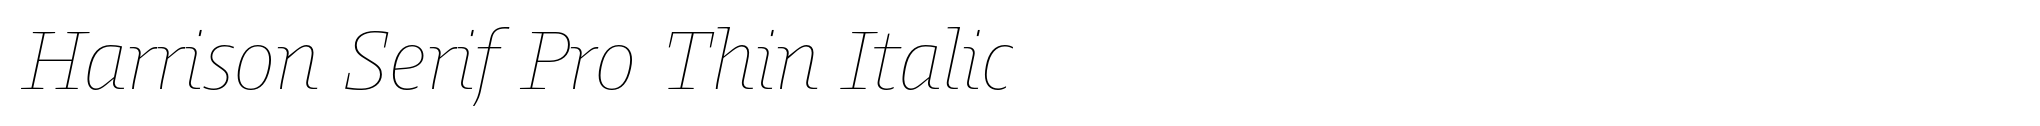 Harrison Serif Pro Thin Italic image